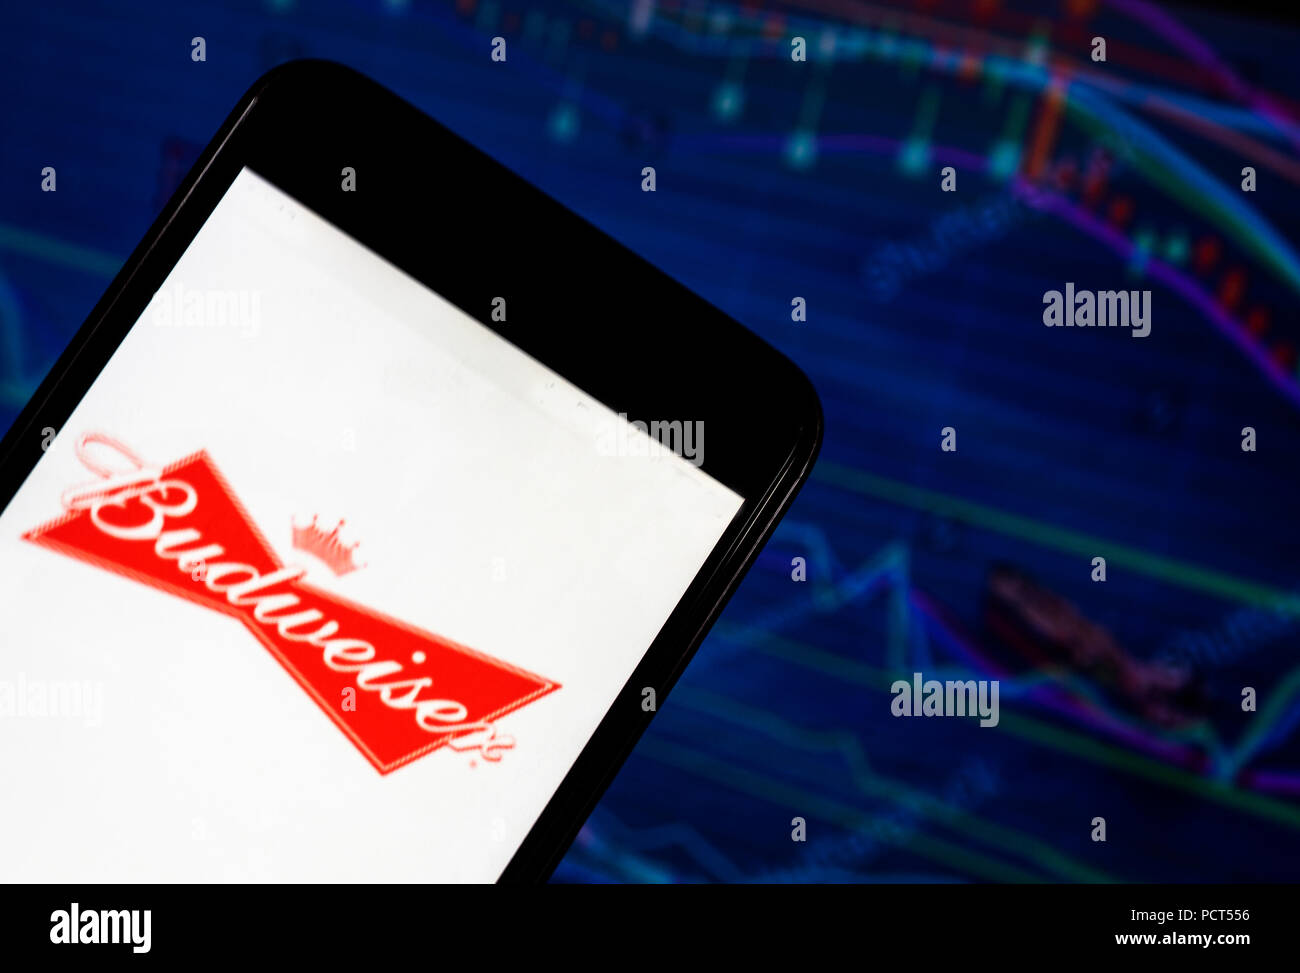 KIEV, UKRAINE - 4 août 2018 : l'application Budweiser vu affichée sur un smartphone avec un arrière-plan d'un shedle. Budweiser est une pale lager produite par Anheuser-Busch, qui fait actuellement partie de la société Anheuser-Busch InBev Banque D'Images